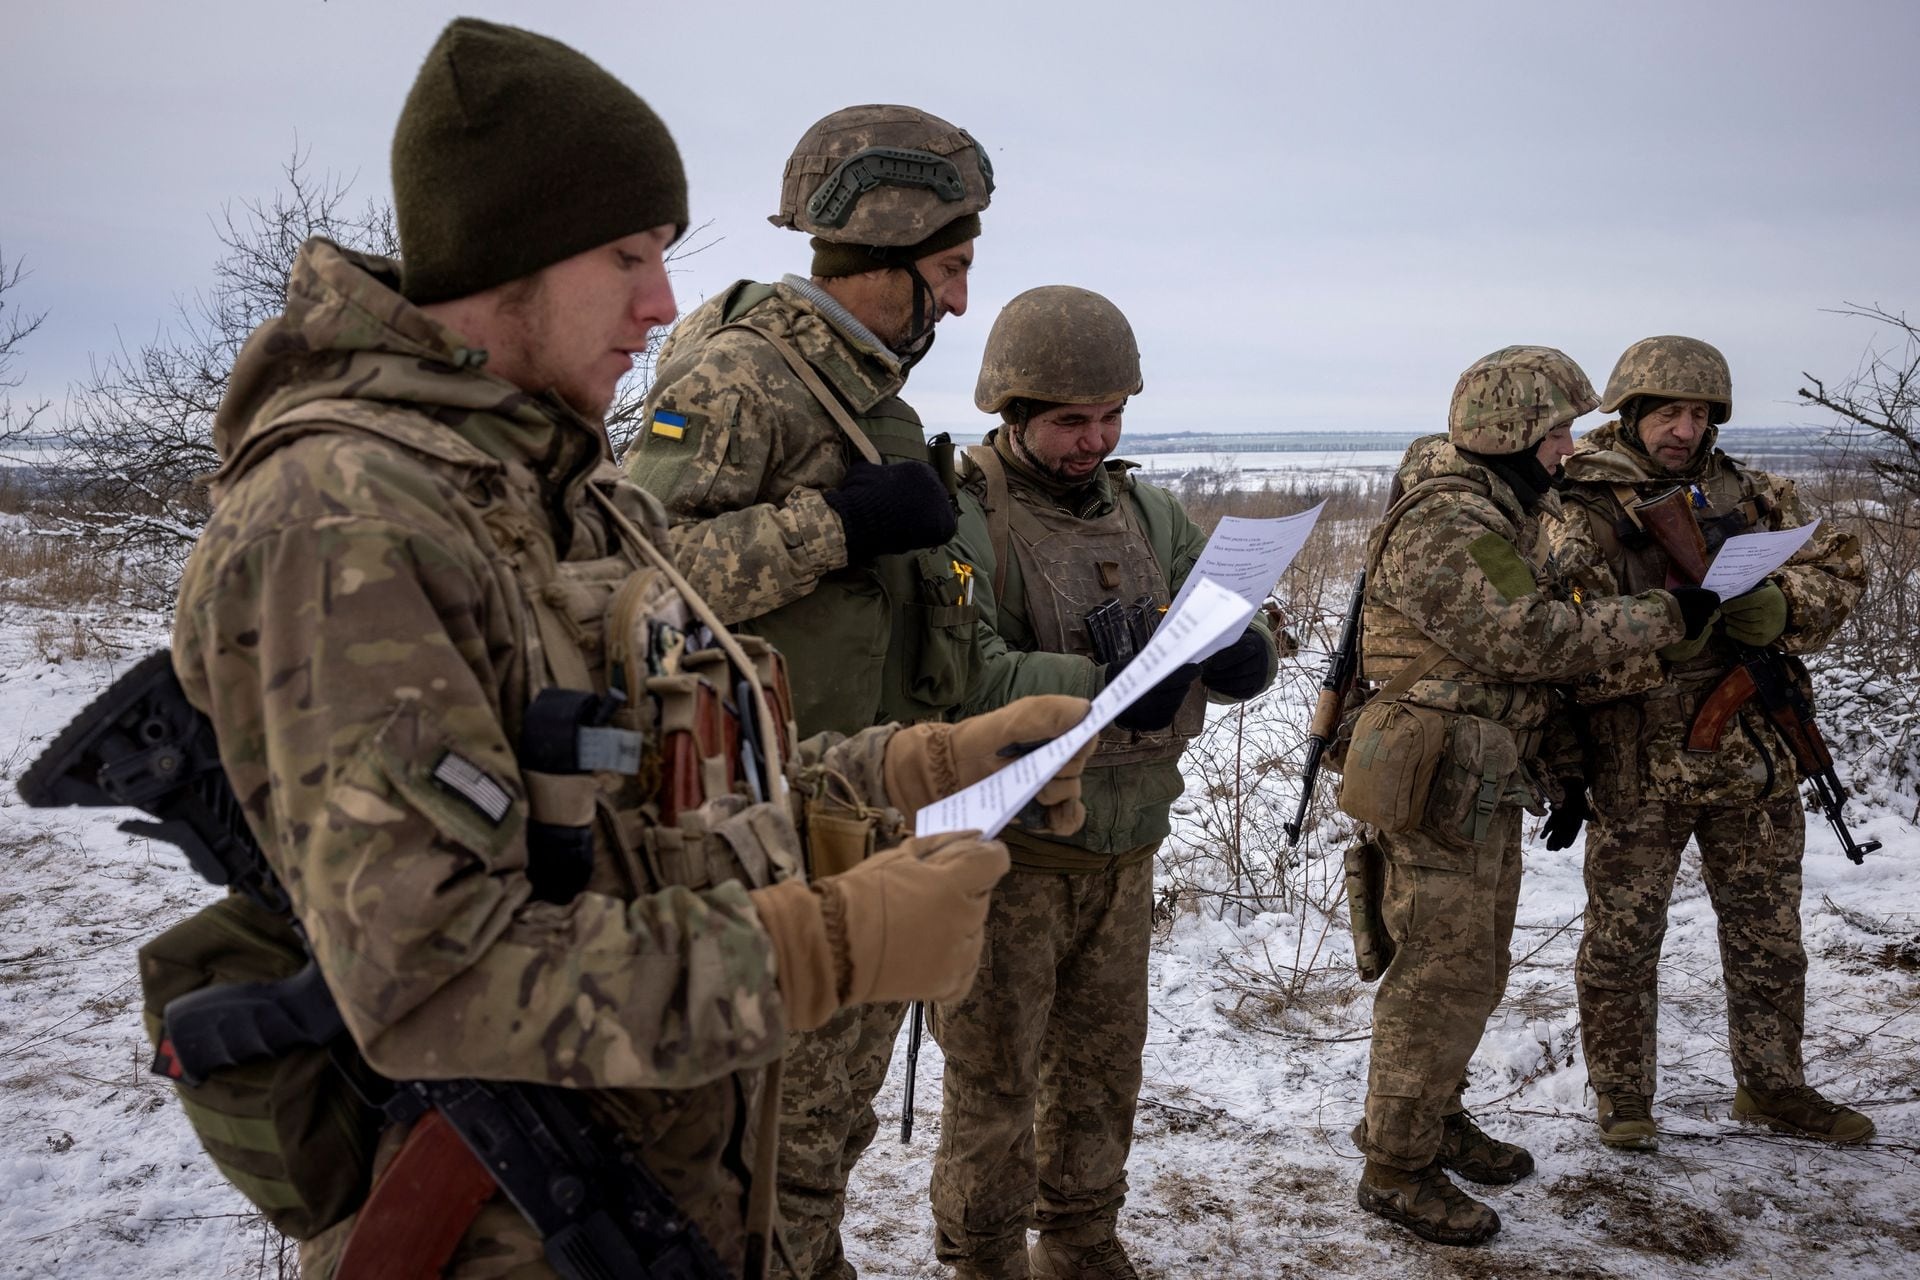 Tuyết phủ trắng nơi giao tranh giữa Ukraine và Nga, binh lính co ro vì giá lạnh - Ảnh 2.